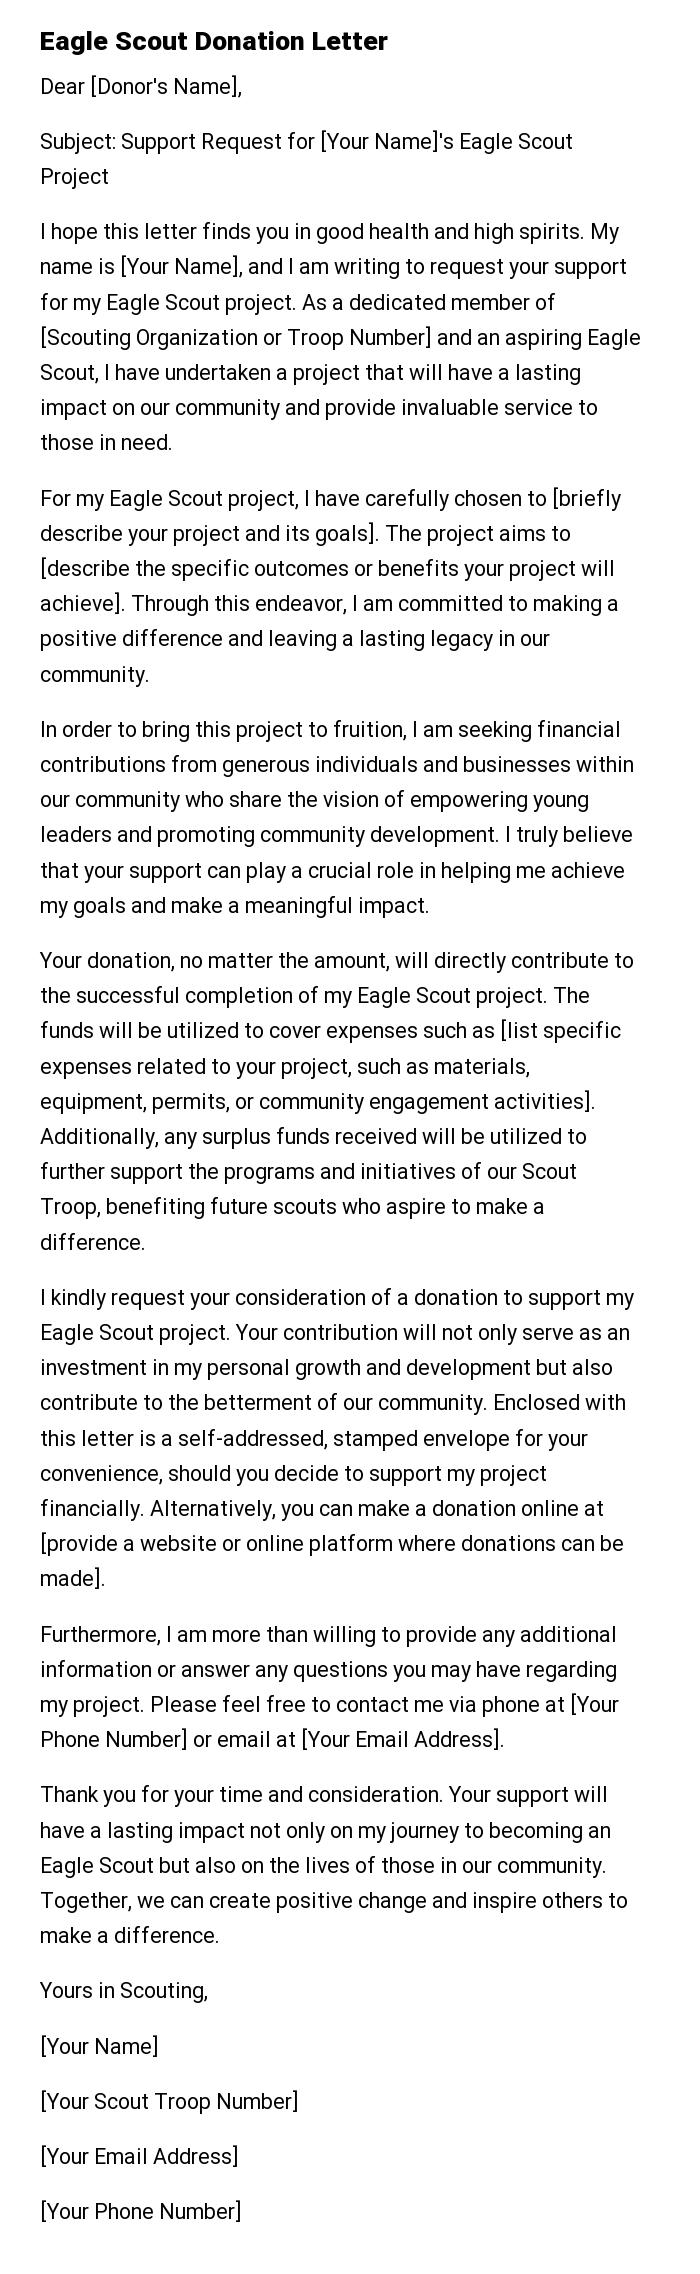 Eagle Scout Donation Letter